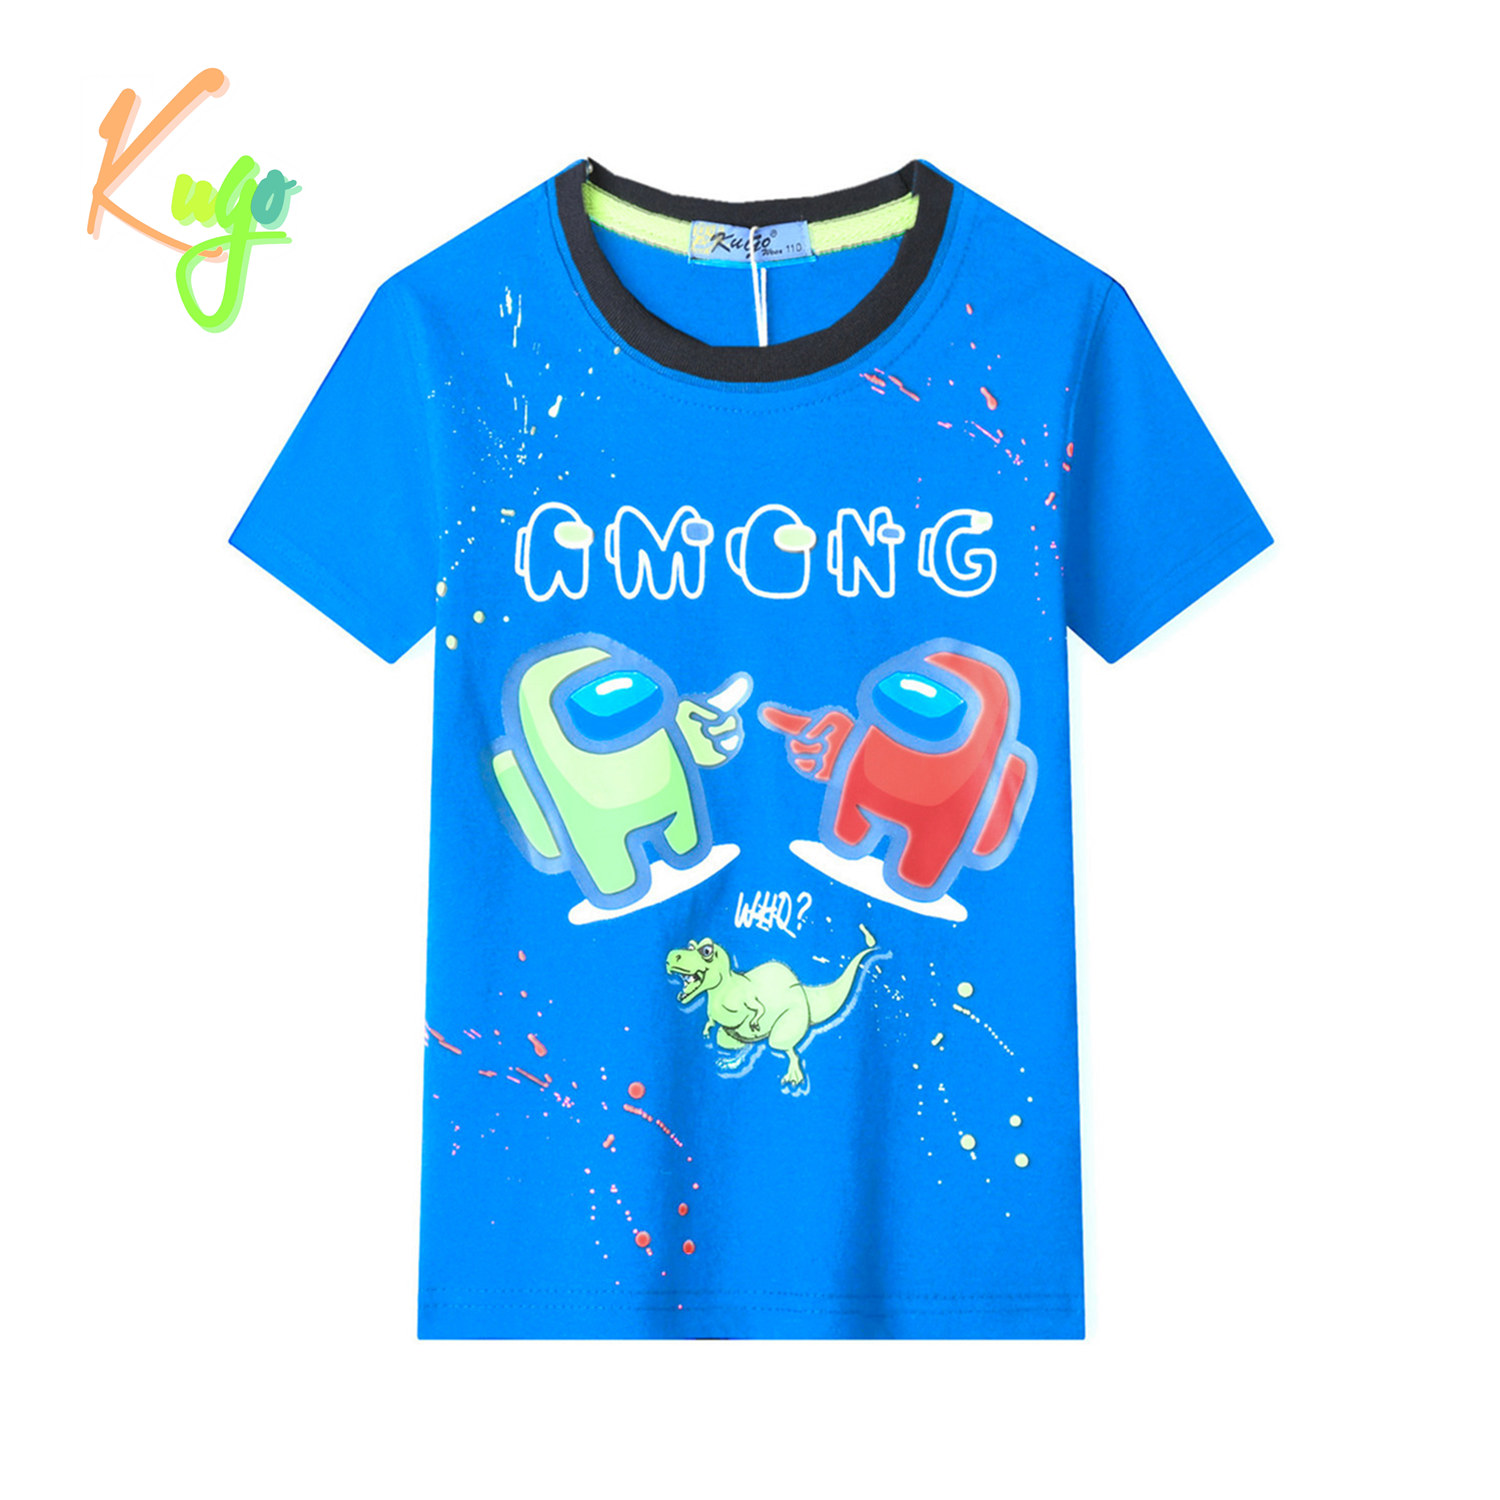 Chlapecké tričko - KUGO TM9202, tyrkysová Barva: Tyrkysová, Velikost: 110